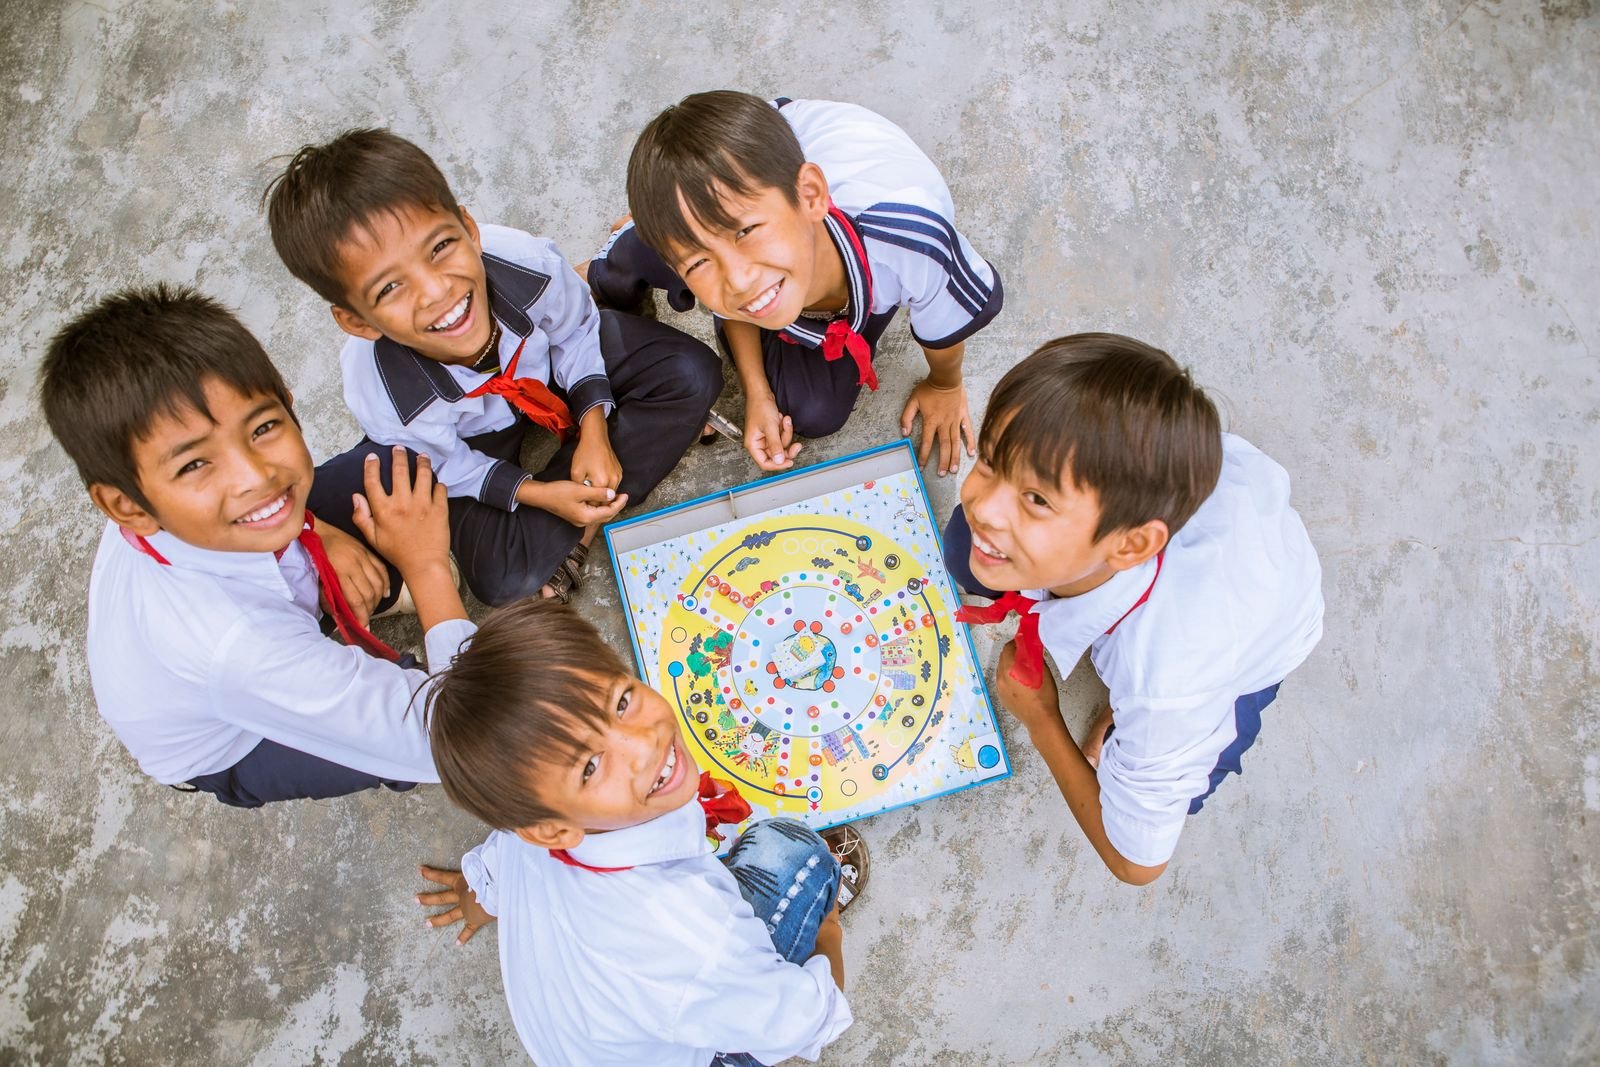 Kinh tế - Masterise Group và UNICEF hợp tác trong dự án thay đổi tương lai trẻ em Việt Nam (Hình 2).